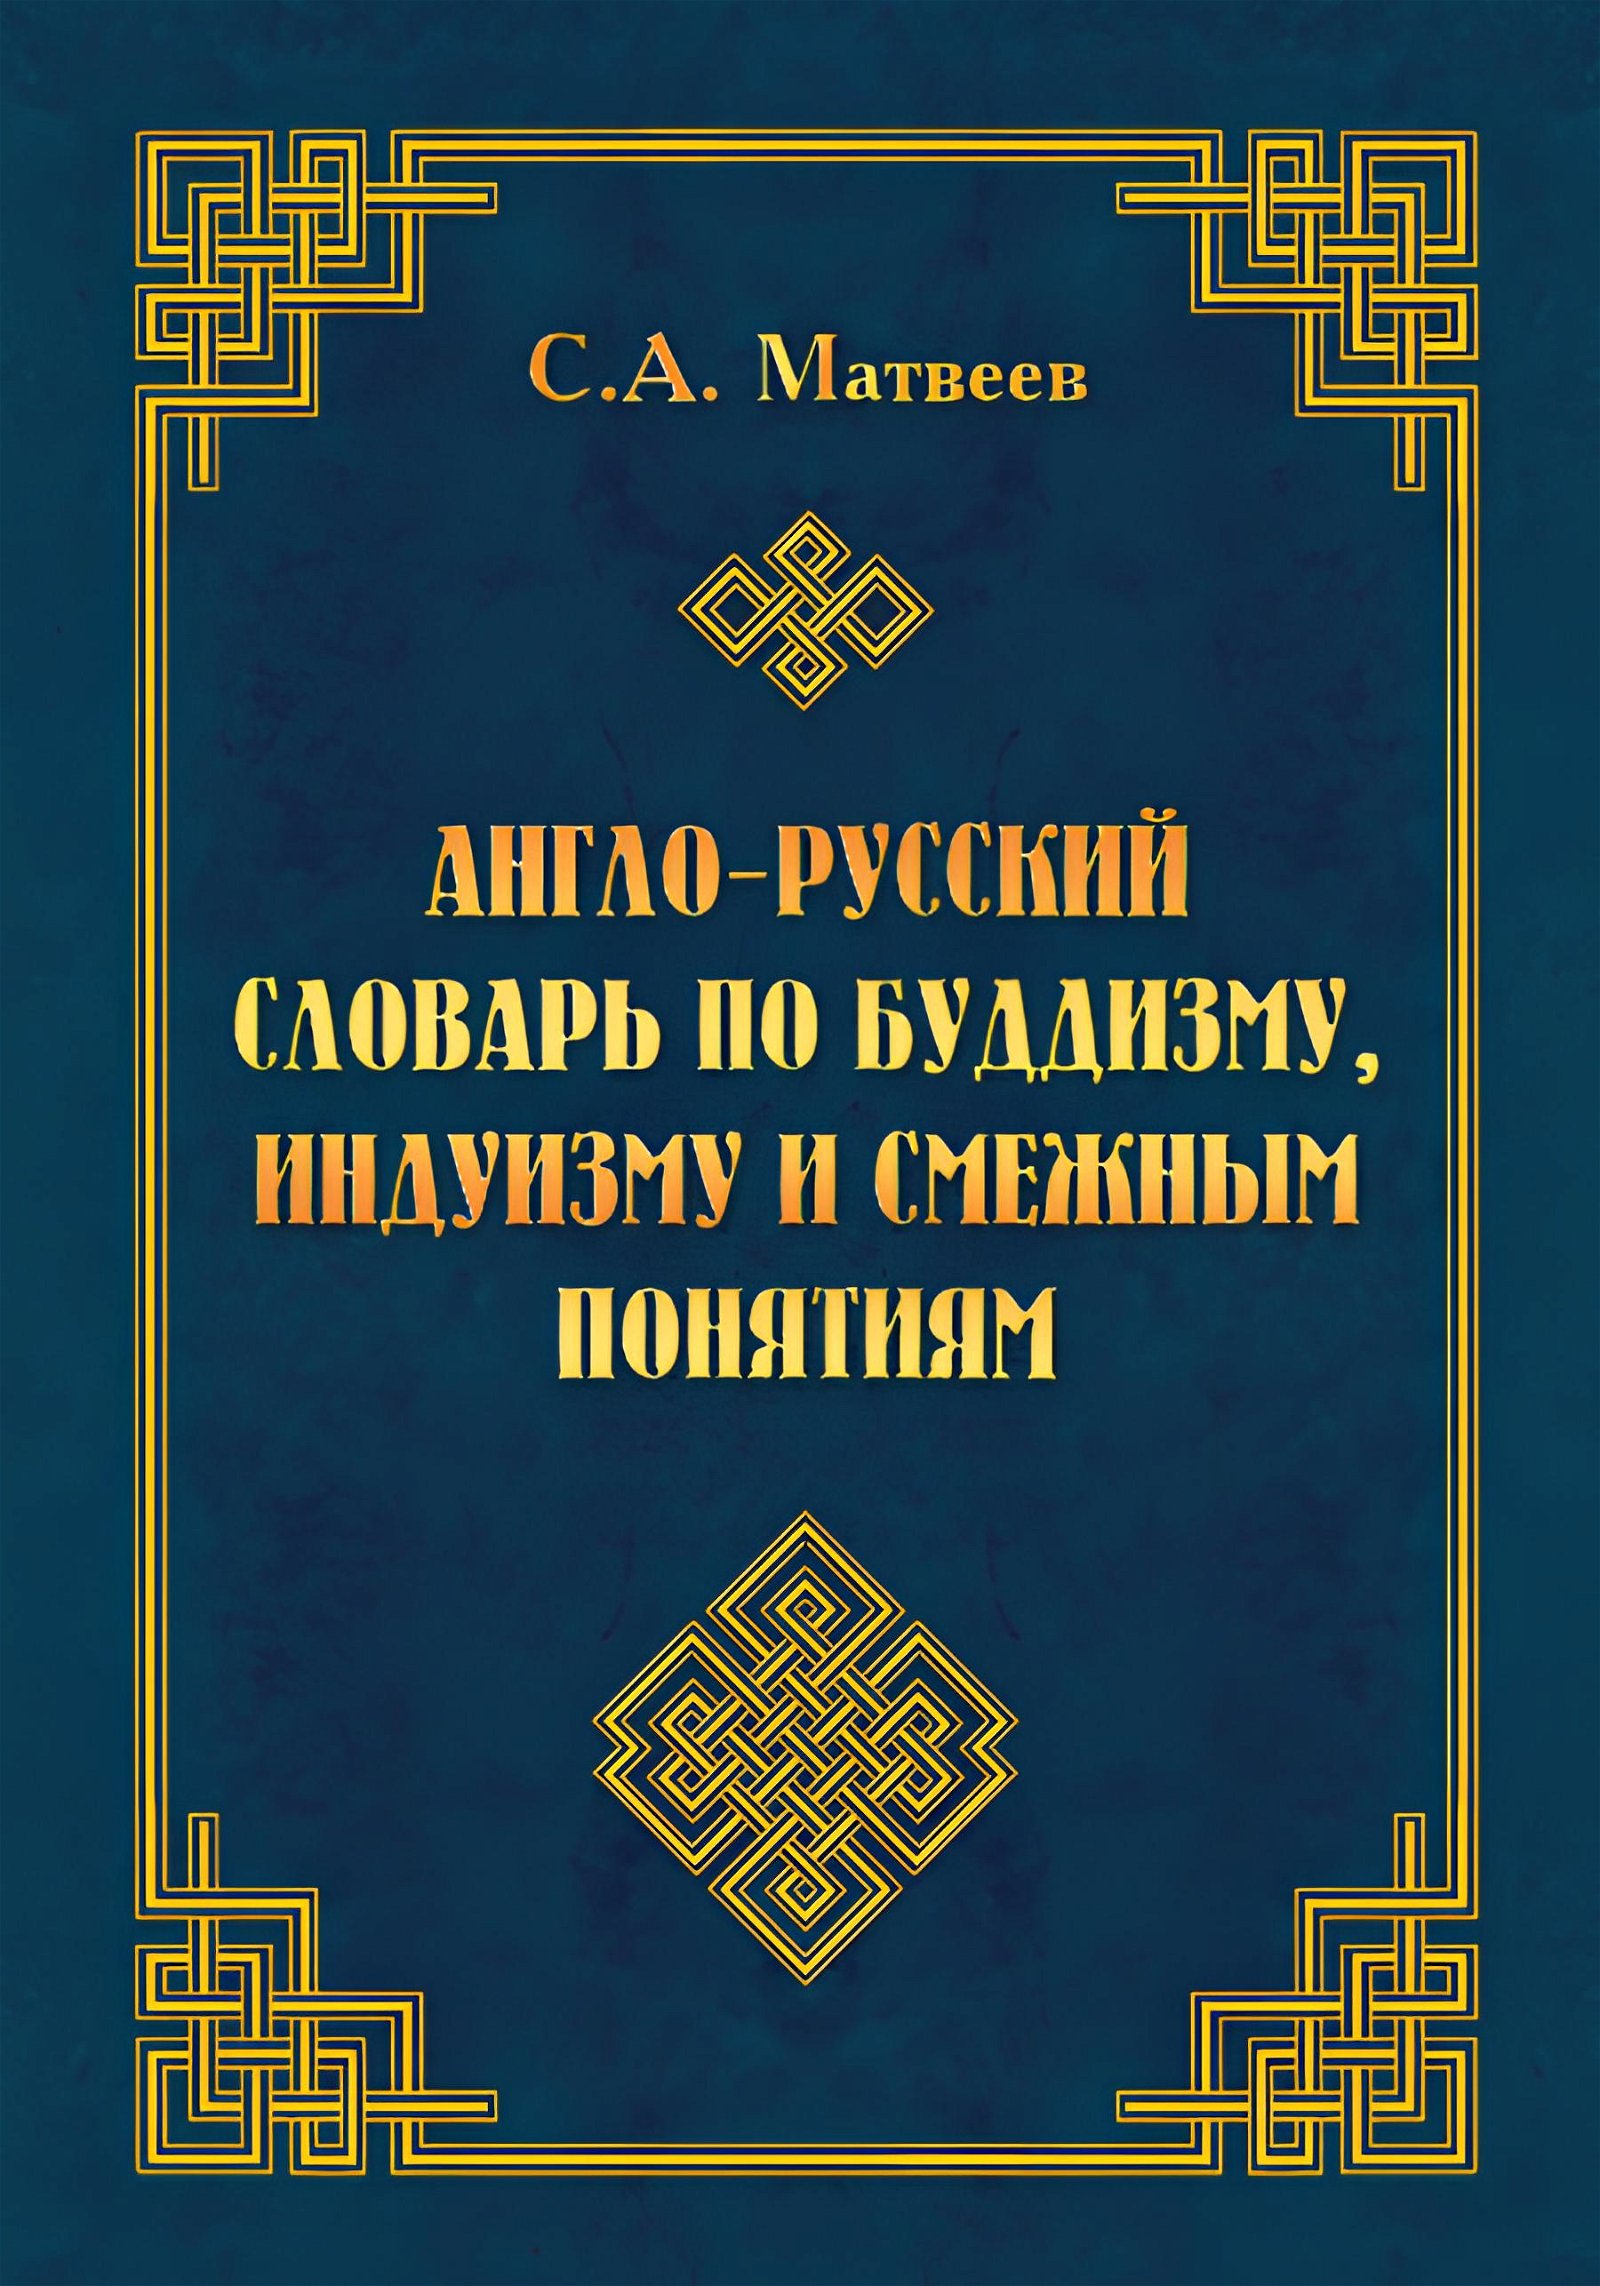 Англо-русский словарь по буддизму, индуизму и смежным понятиям. 